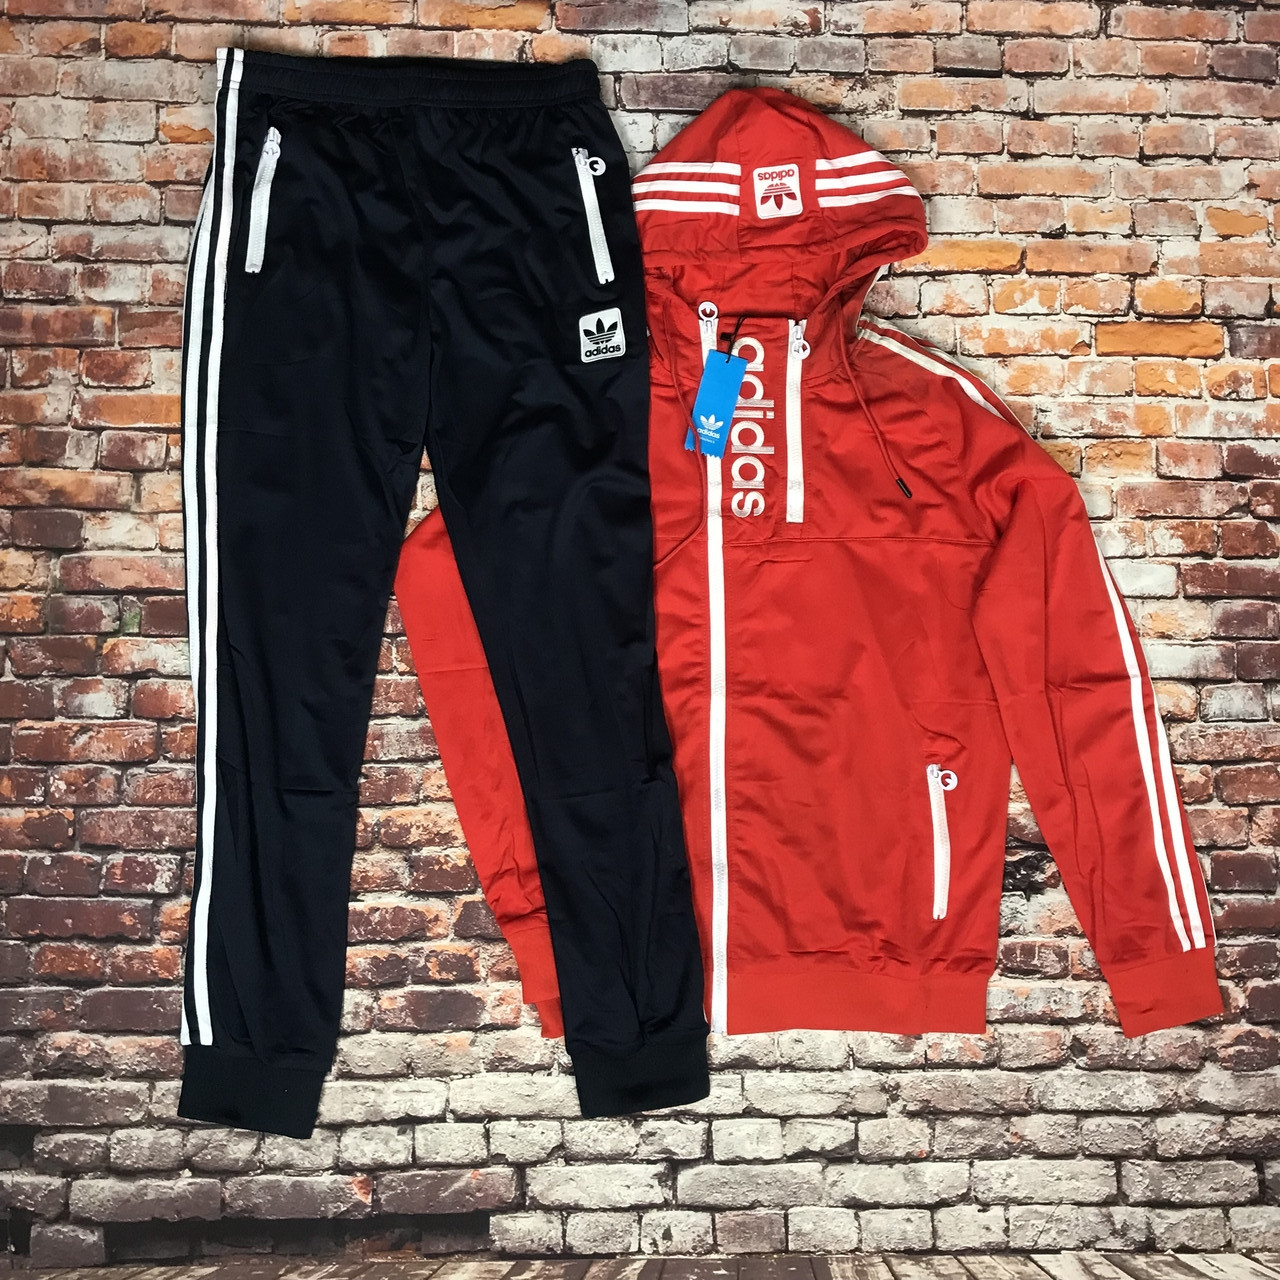 Чоловічий спортивний костюм Adidas червоний із синім (Розмір XL)